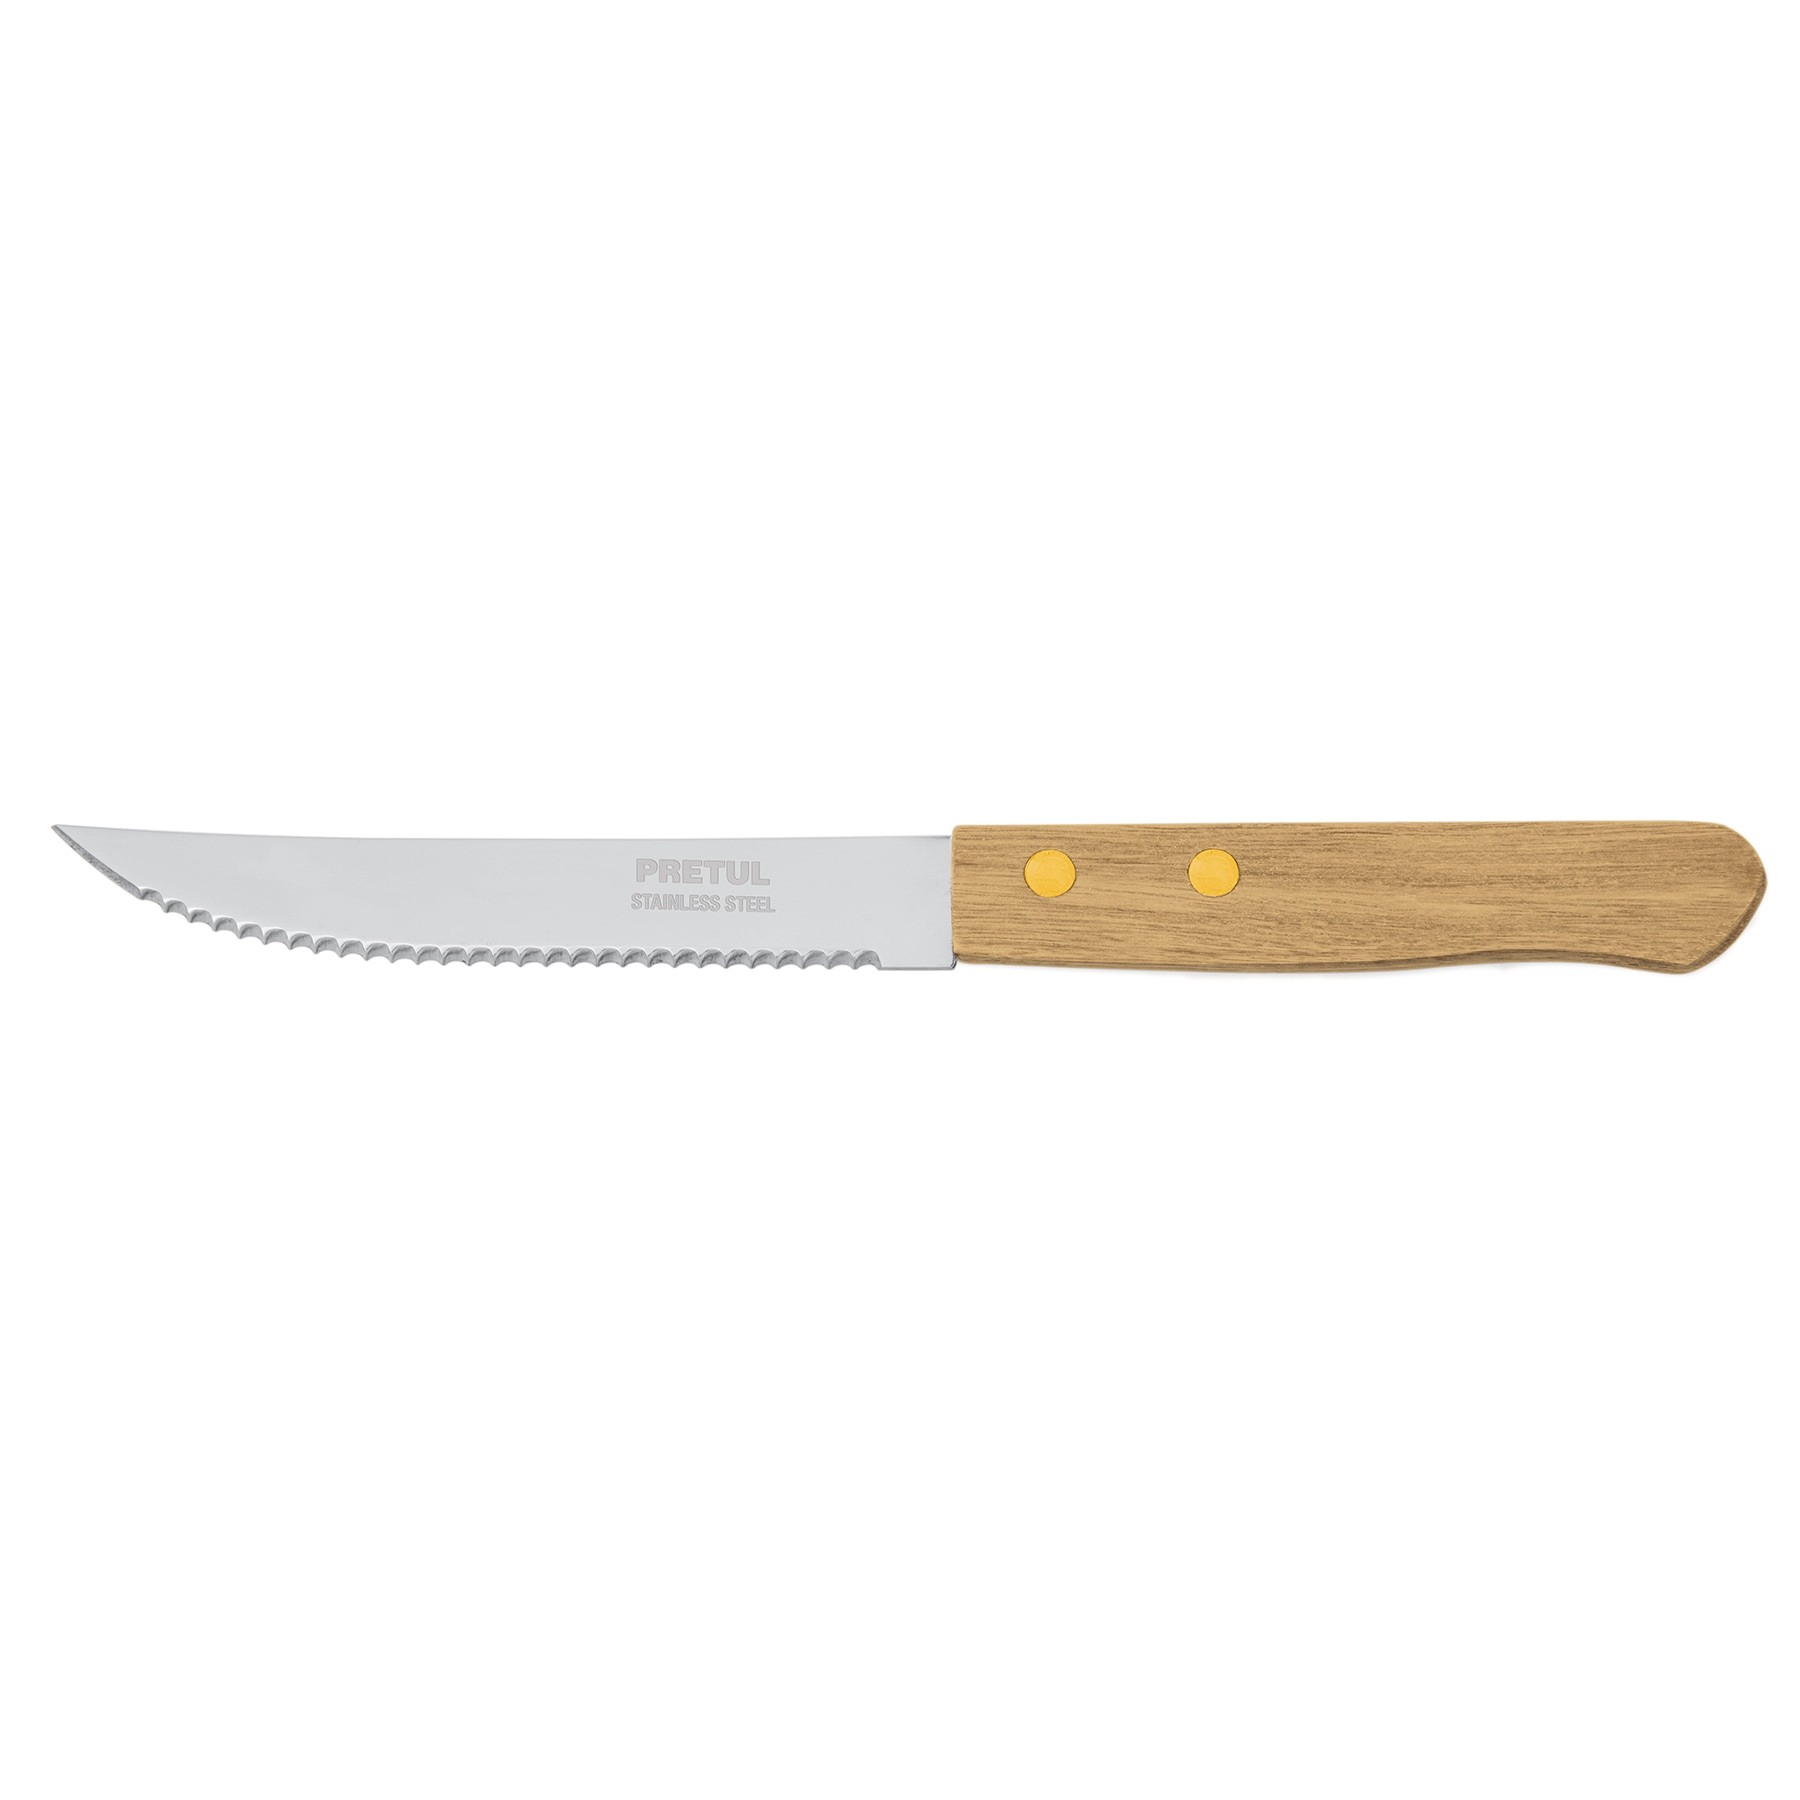 Tradineur - Cuchillo de sierra para carne, hoja de acero inoxidable de 10  cm y mango de madera, cubiertos clásicos, apto para la